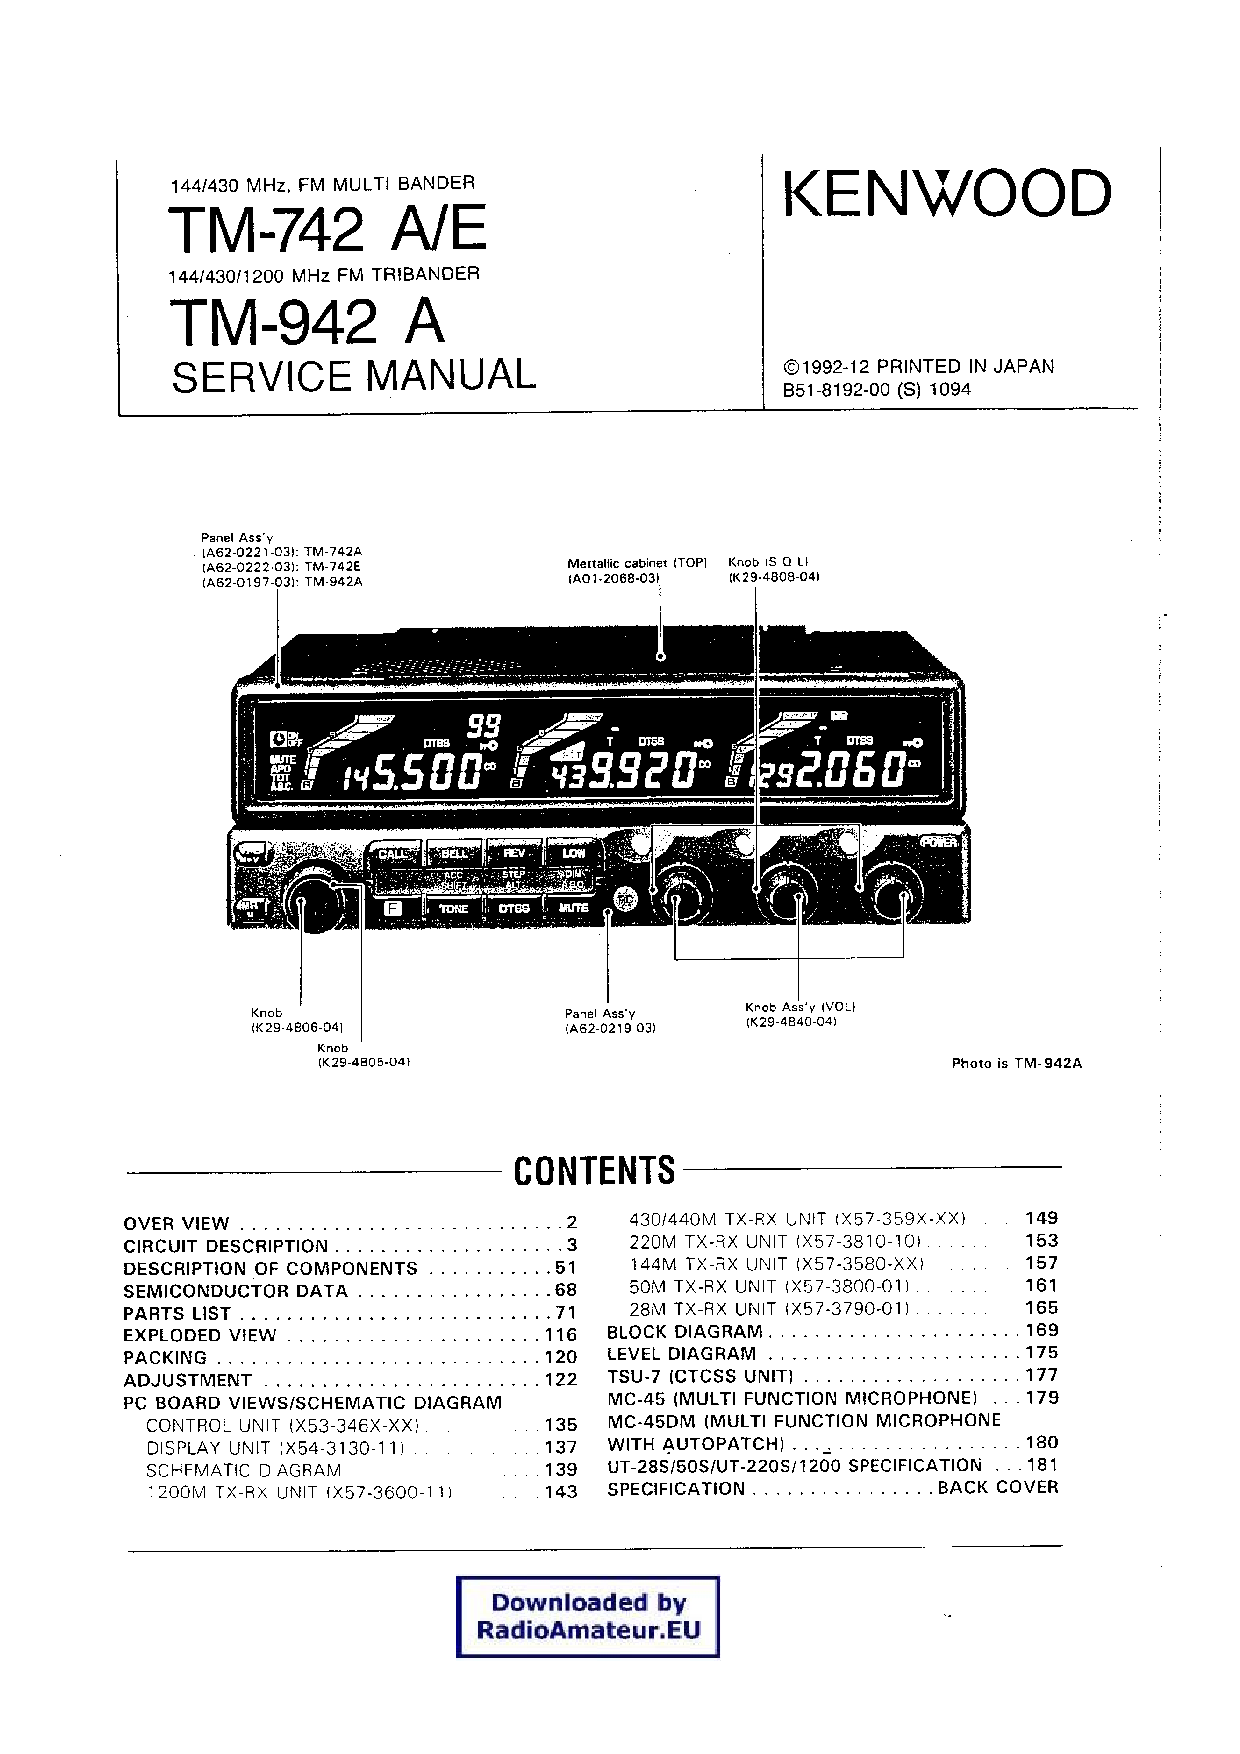 Kenwood TM-742 A User Manual